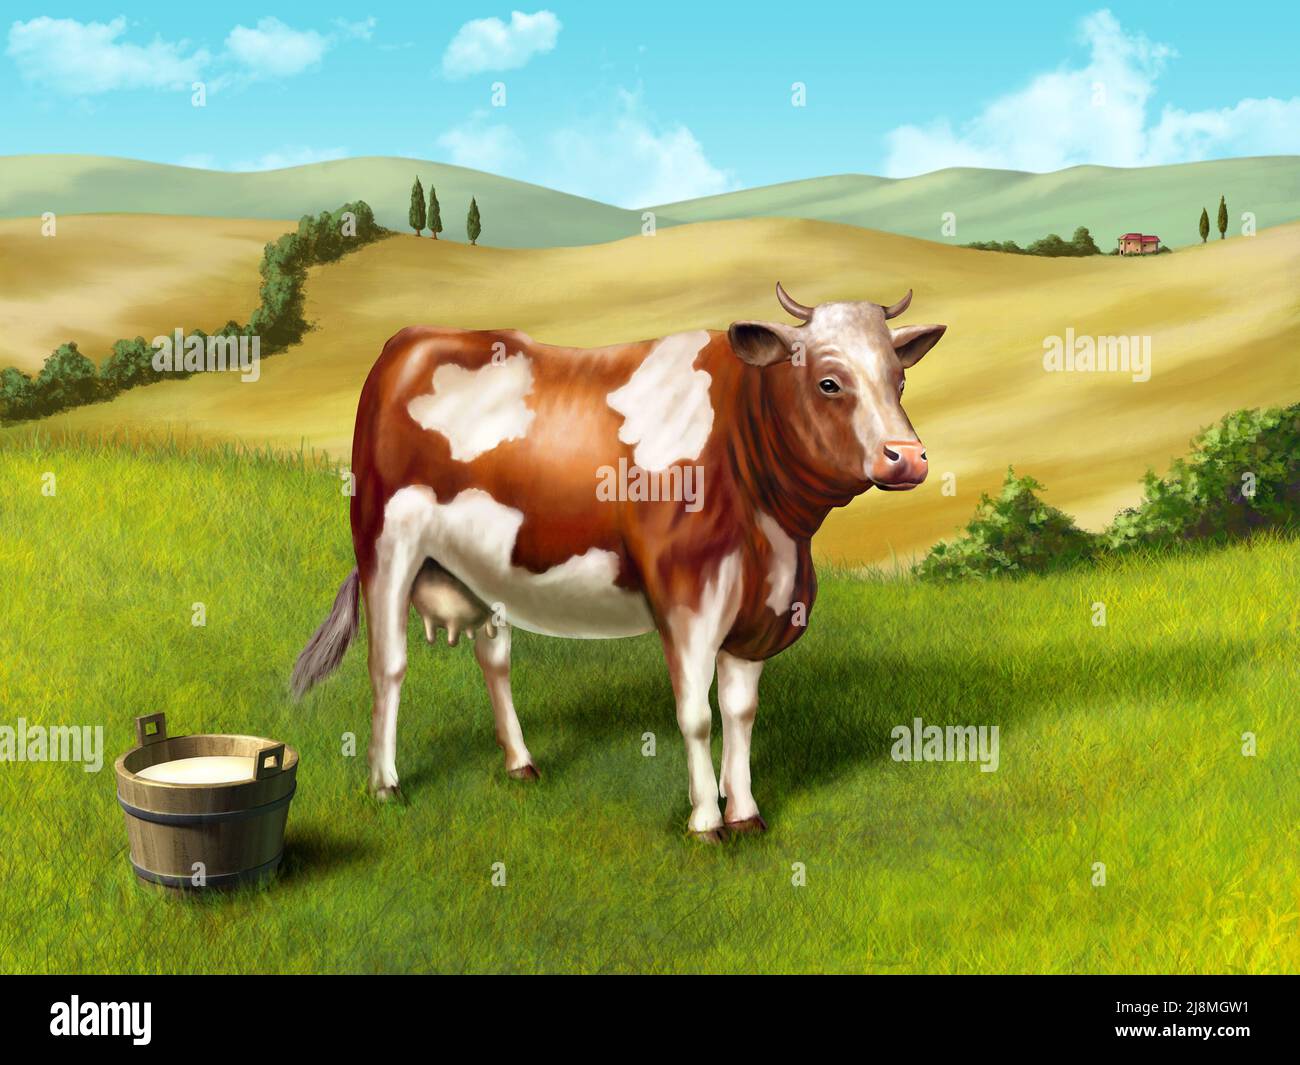 La leche de vaca y la cuchara en un paisaje rural. Ilustración digital original. Foto de stock